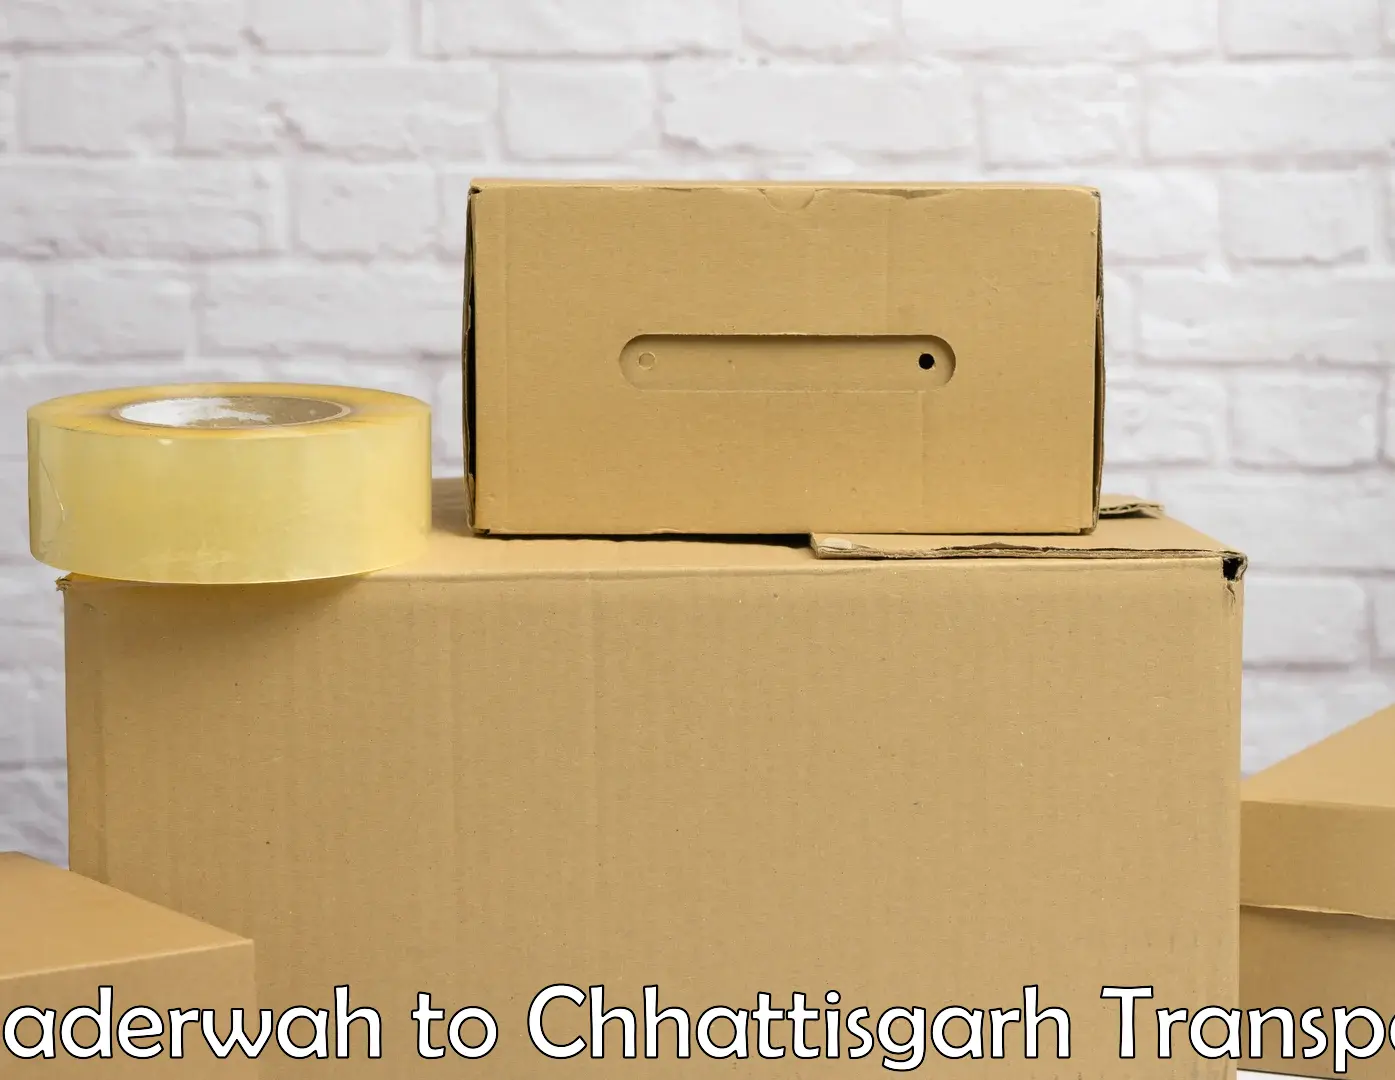 Transport in sharing Bhaderwah to Korea Chhattisgarh